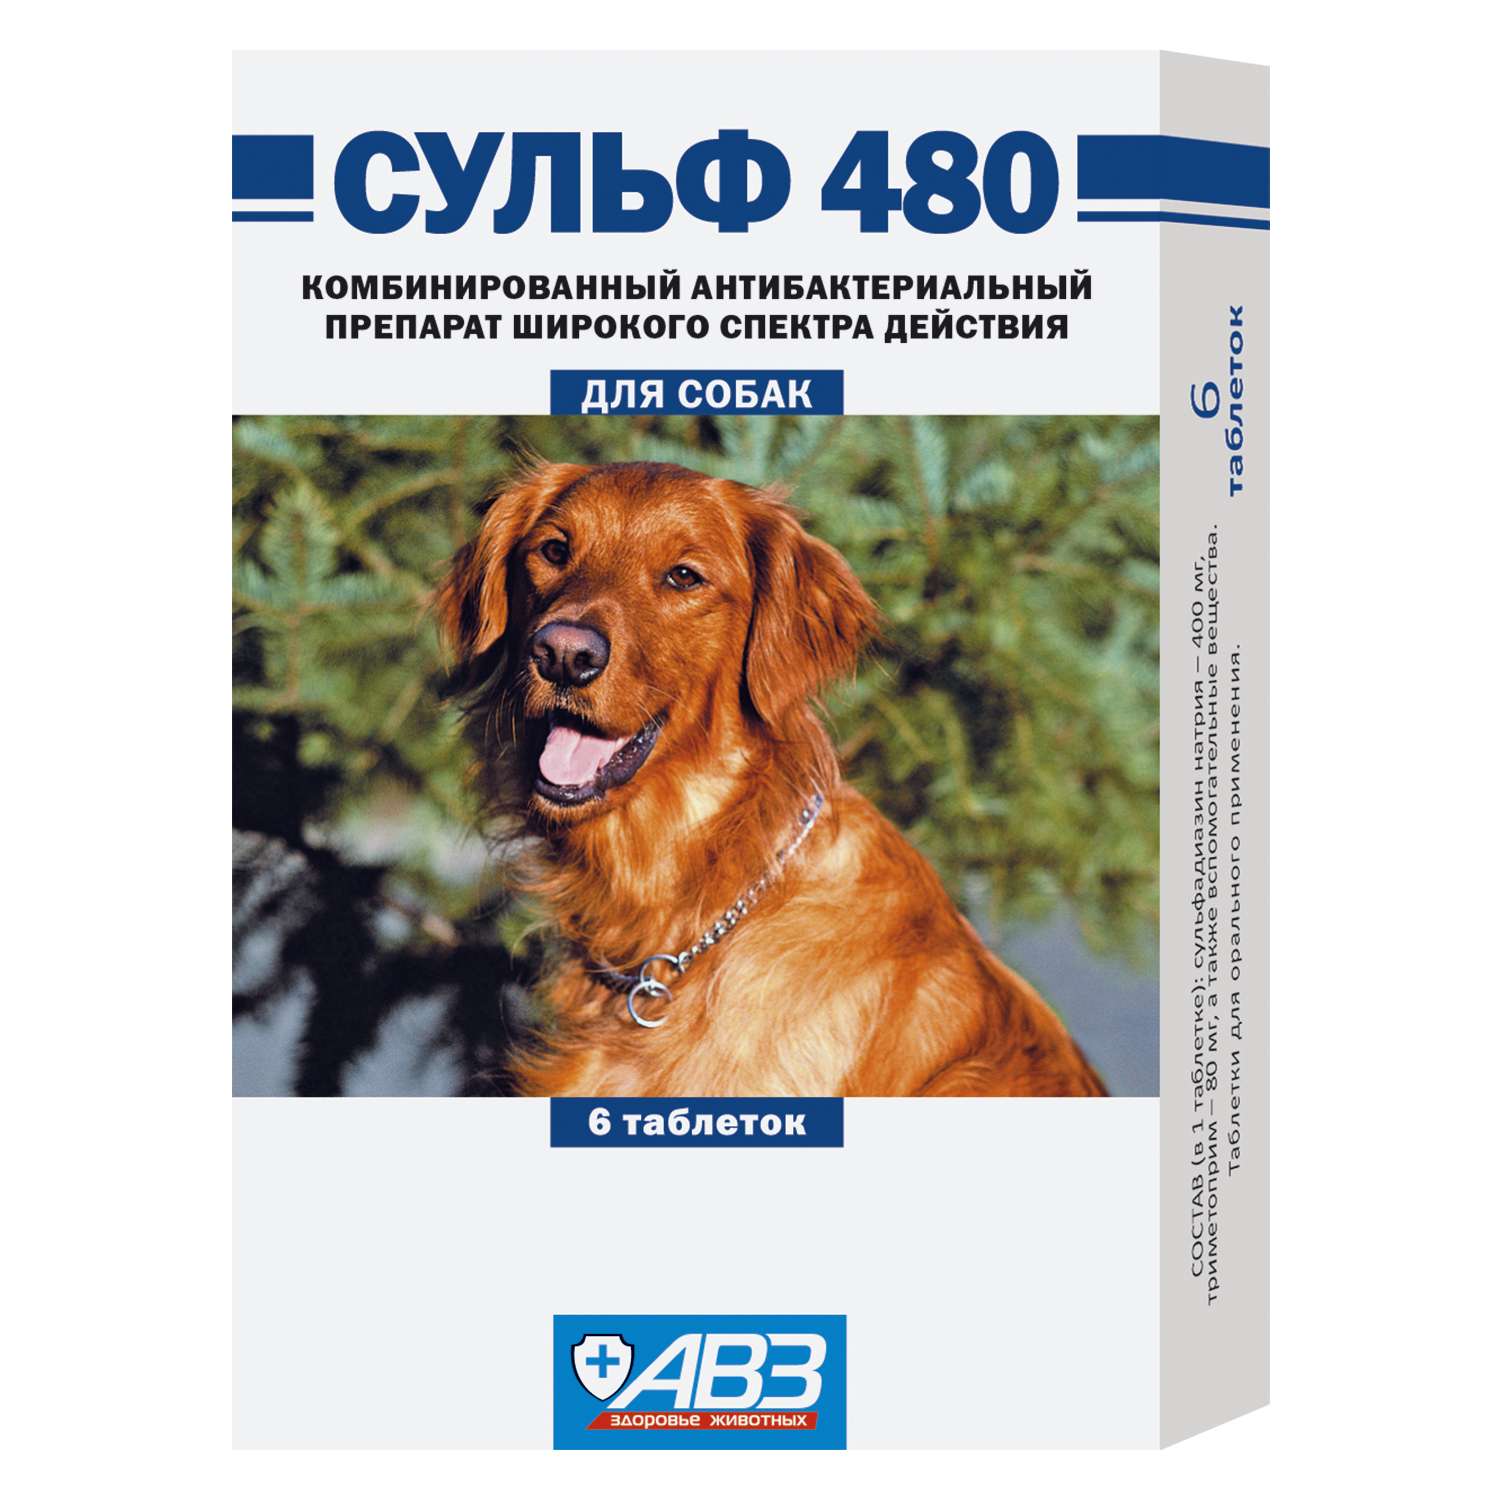 Препарат антибактериальный для собак АВЗ Сульф 480 6таблеток - фото 1